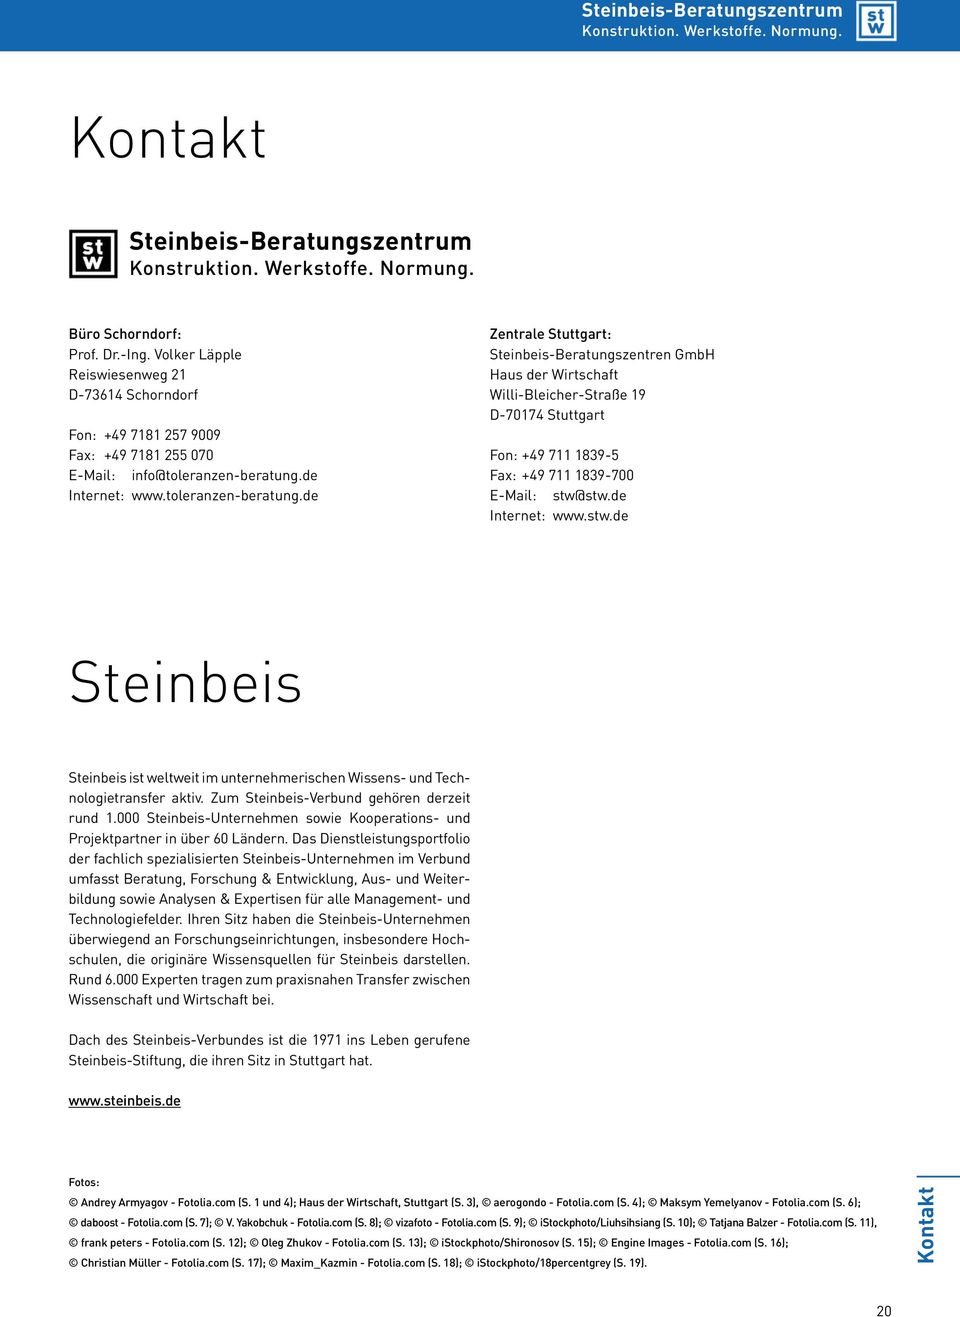 de Zentrale Stuttgart: Steinbeis-Beratungszentren GmbH Haus der Wirtschaft Willi-Bleicher-Straße 19 D-70174 Stuttgart Fon: +49 711 1839-5 Fax: +49 711 1839-700 E-Mail: stw@